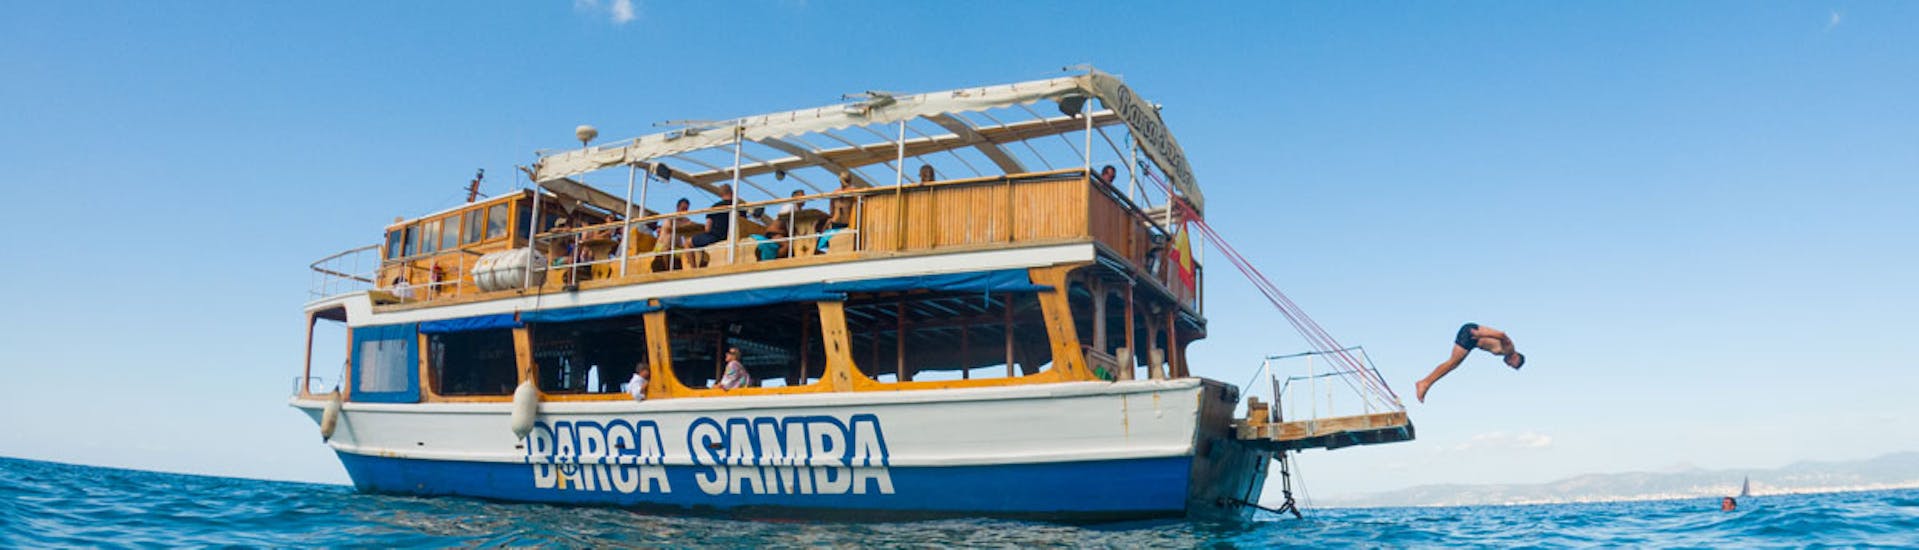 Ein Boot von Barca Samba feiert eine Party Bootstour von Palma de Mallorca mit DJ & Mittagessen.